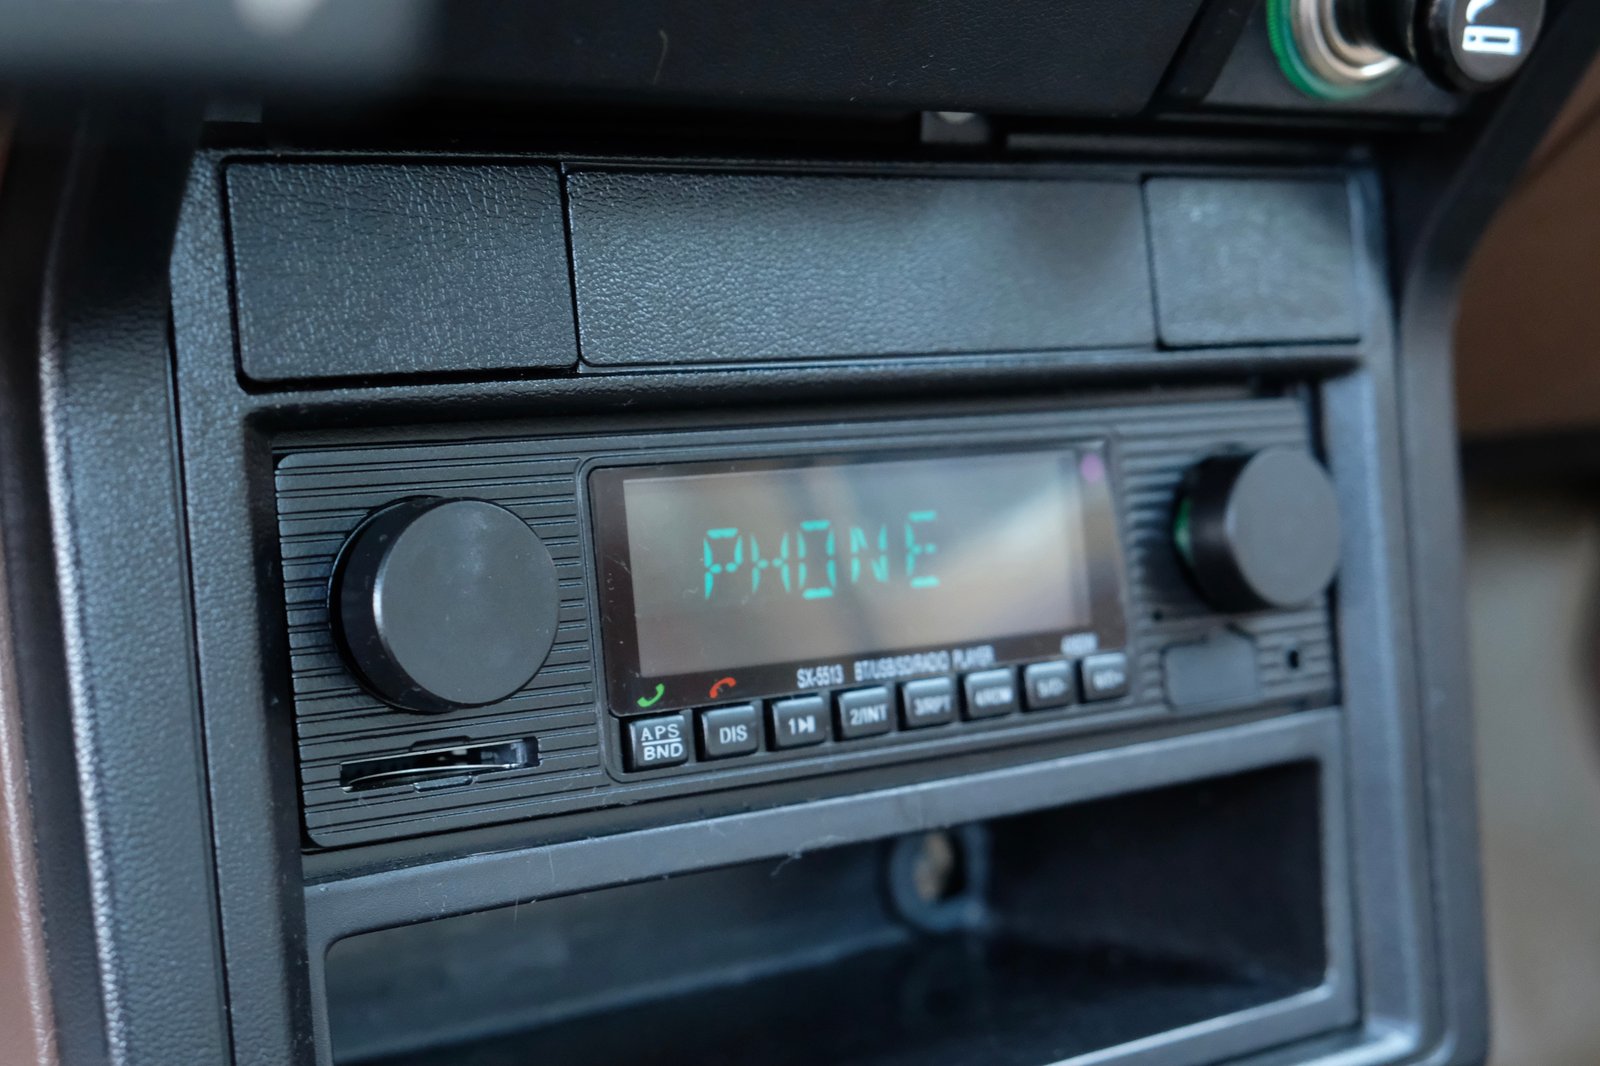 Auto-radio, car audio